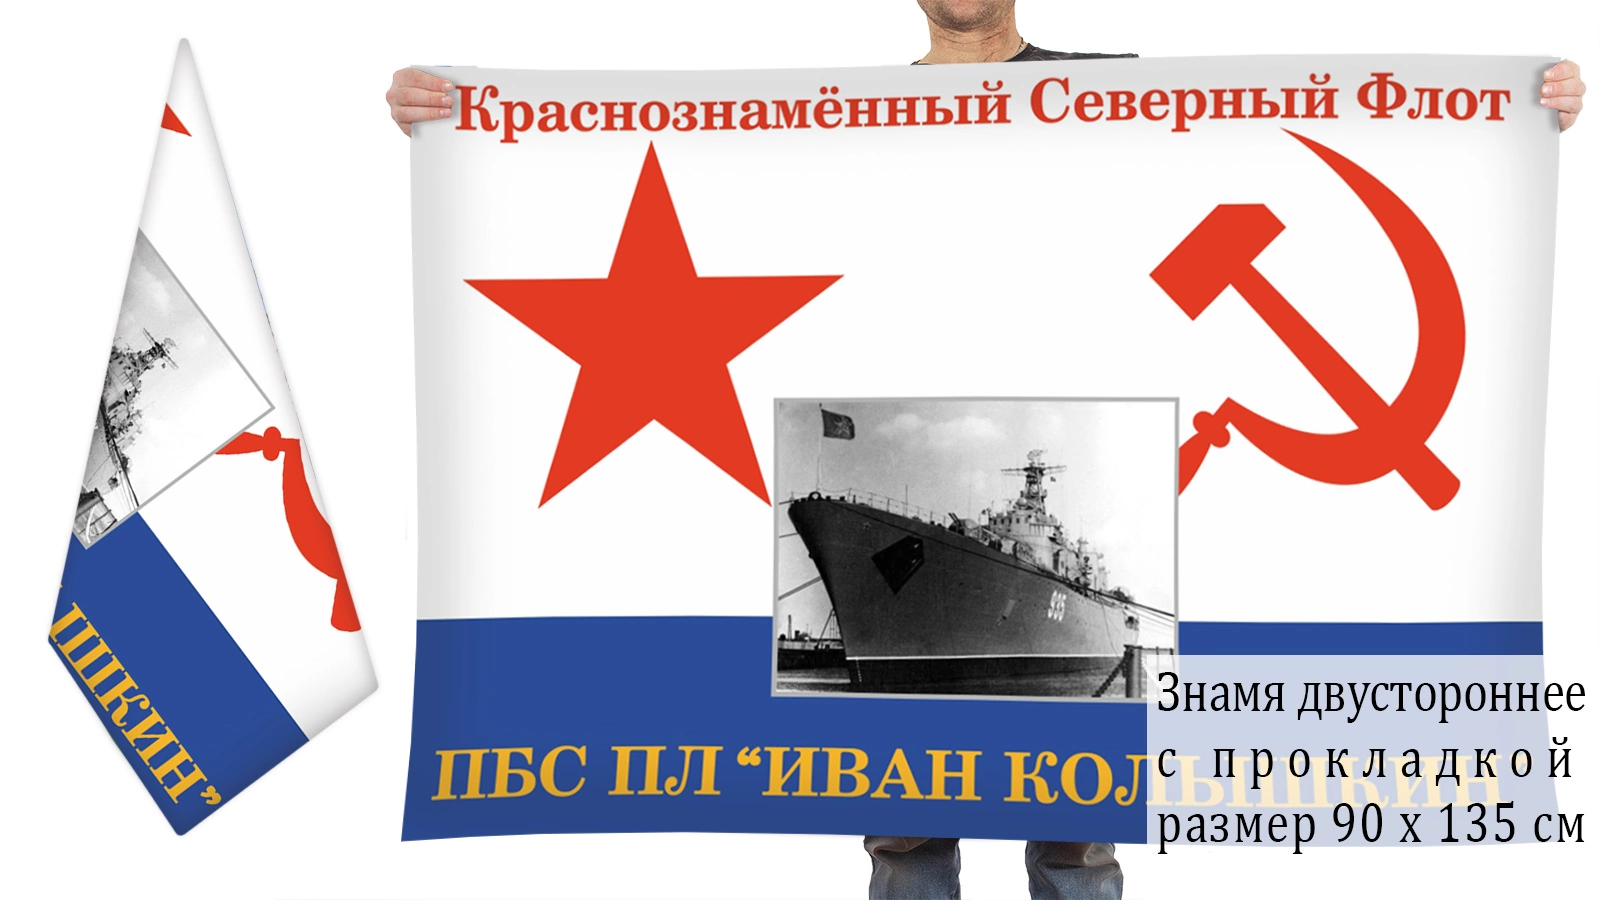 Двусторонний флаг ПБС ПЛ "Иван Колышкин"